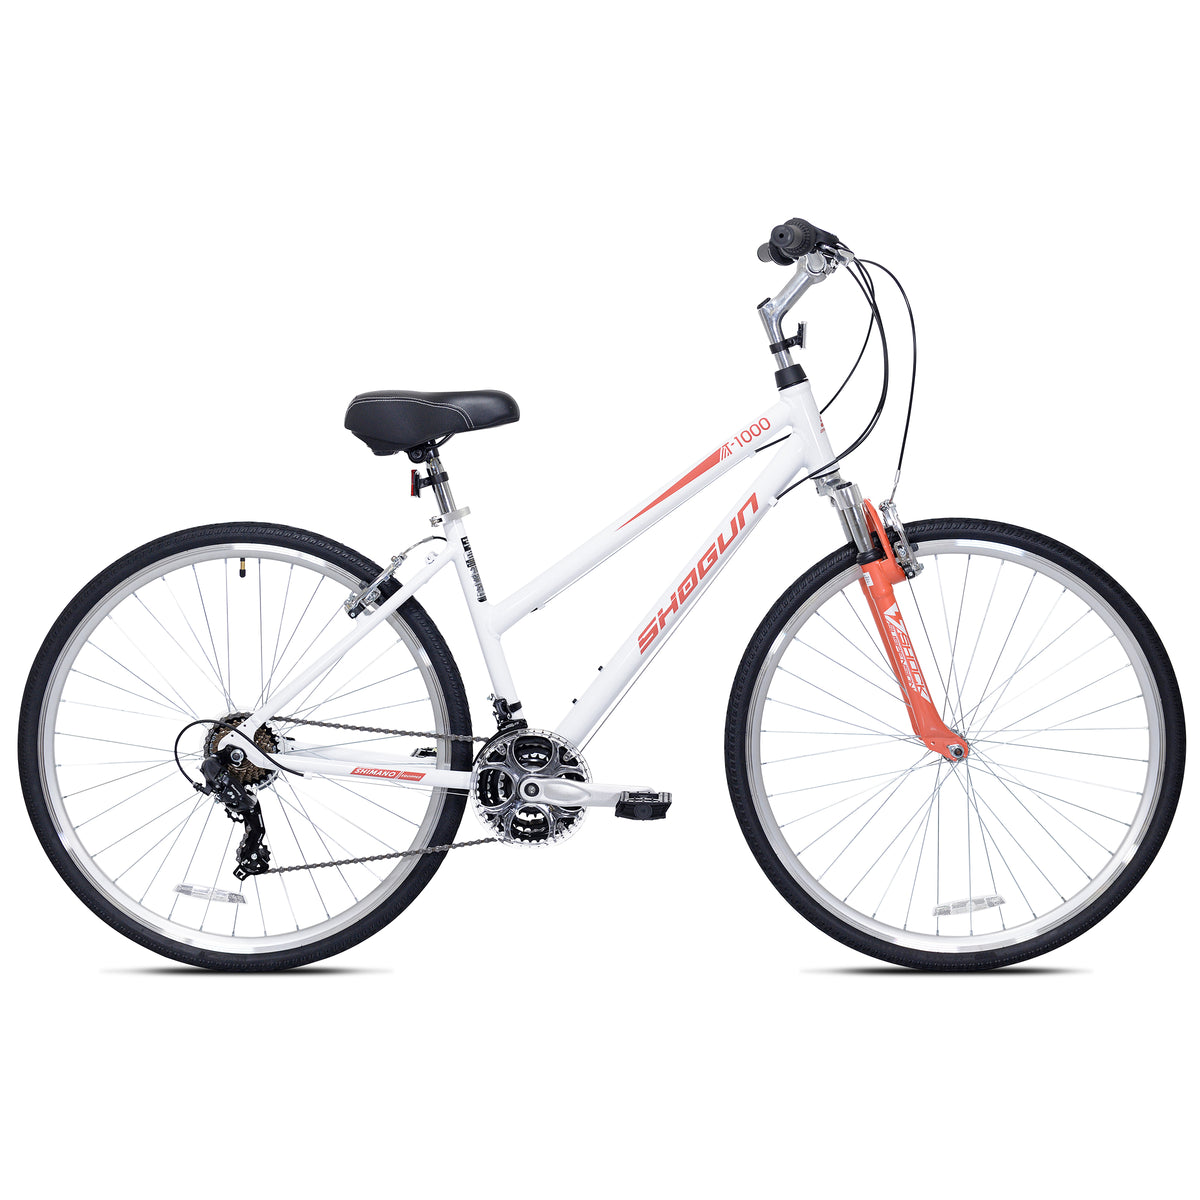 700c Shogun T1000 | Hybrid Comfort Bike for Women Ages 14+